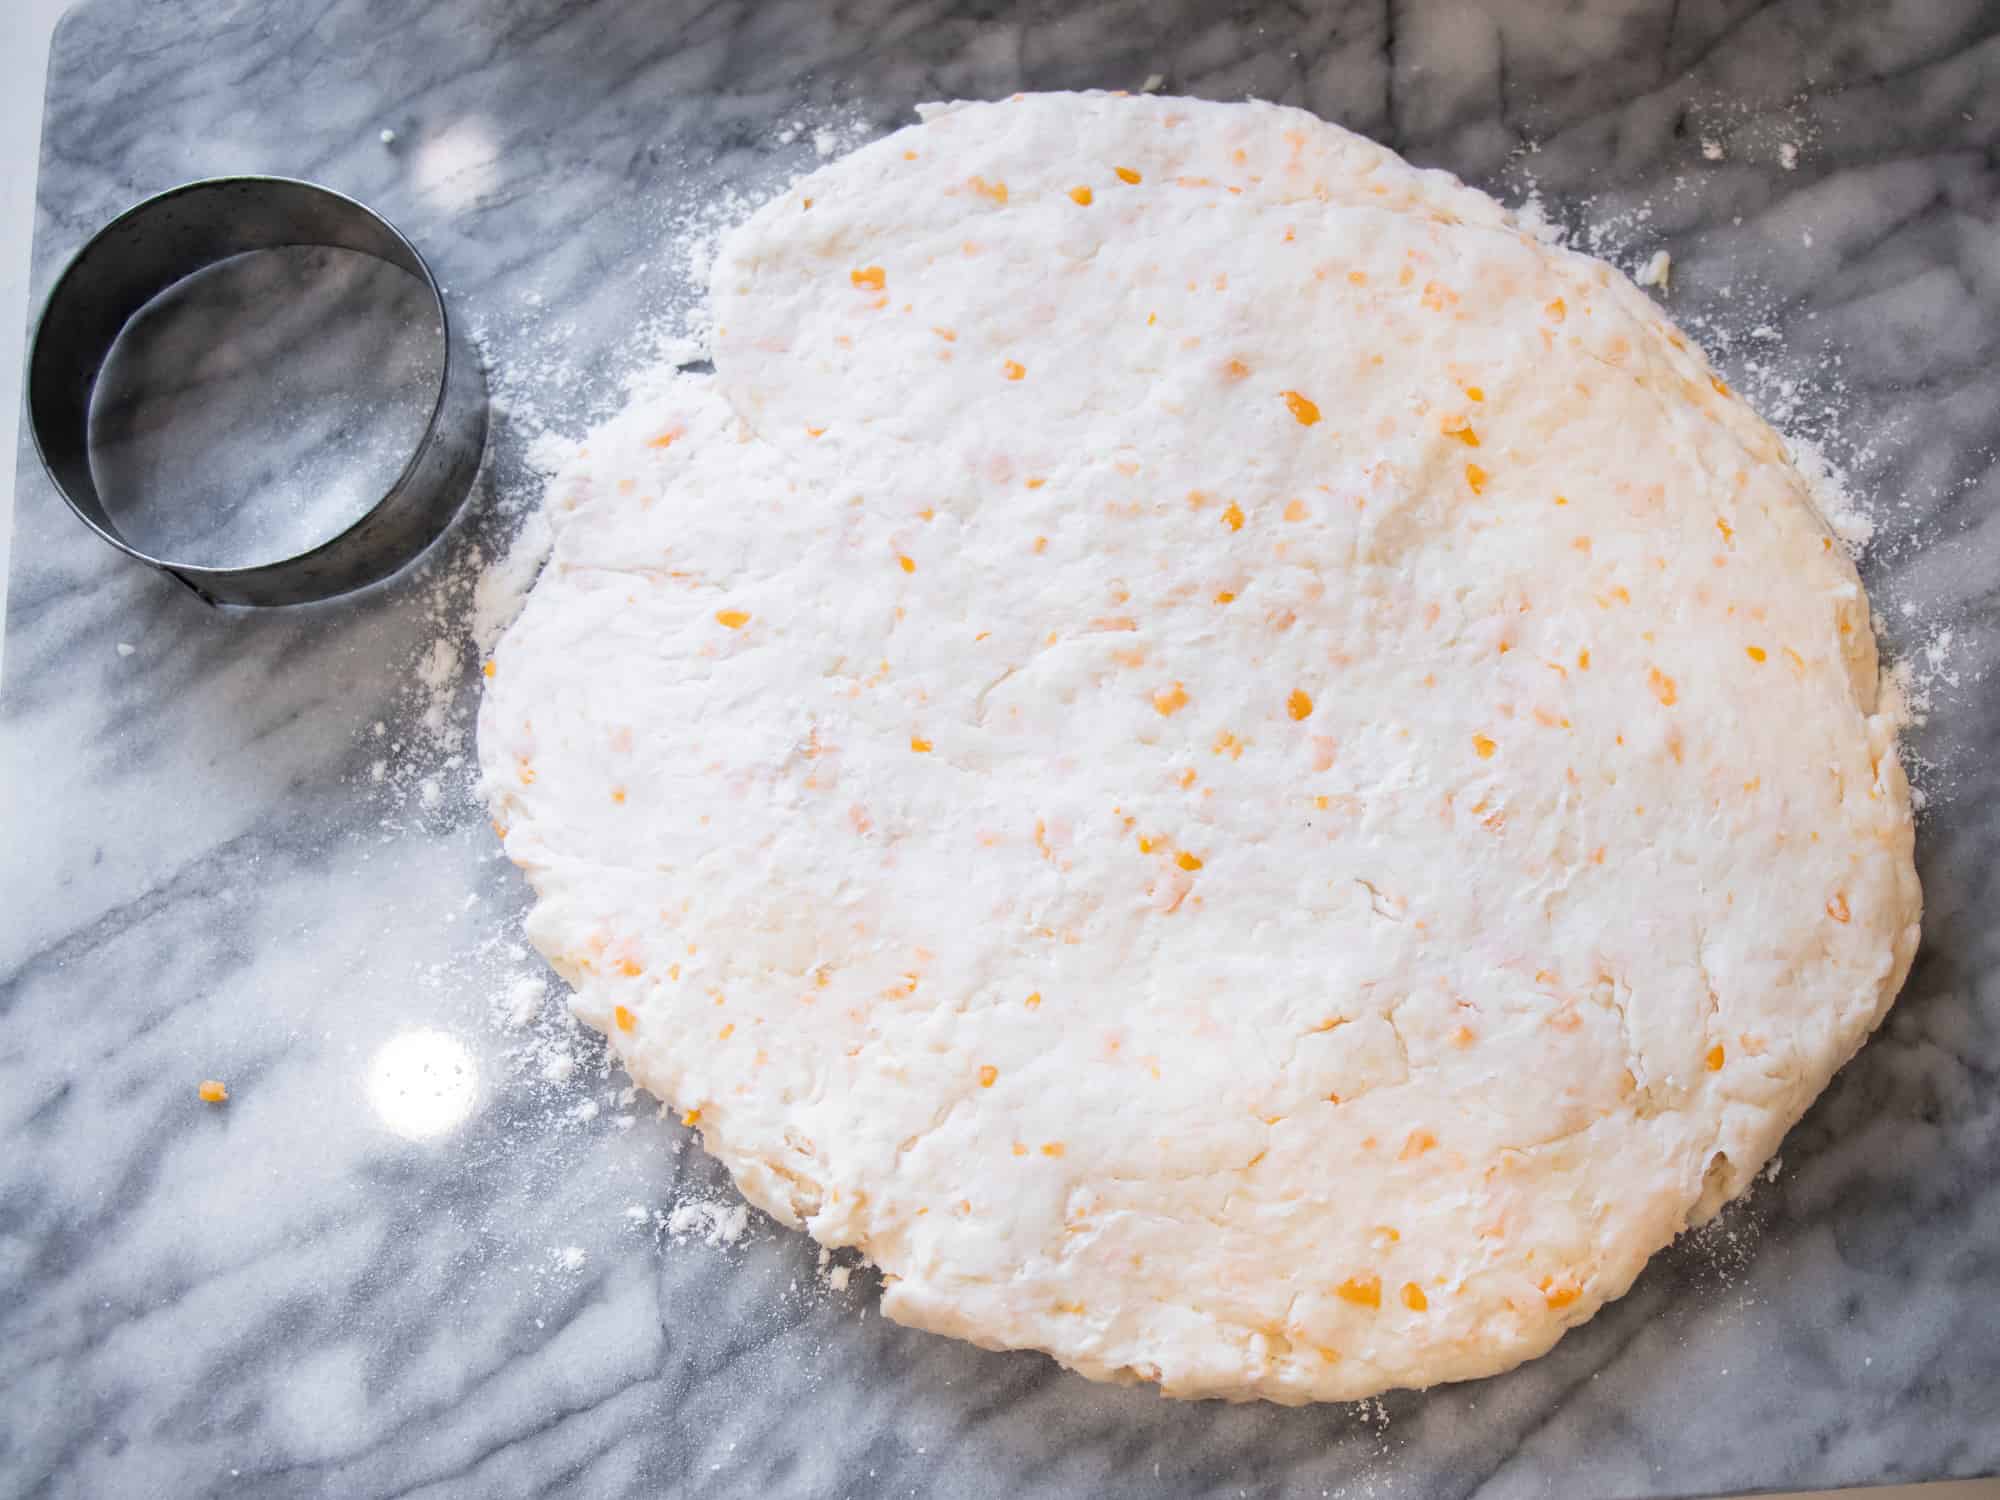 Flatten the dough on a floured surface